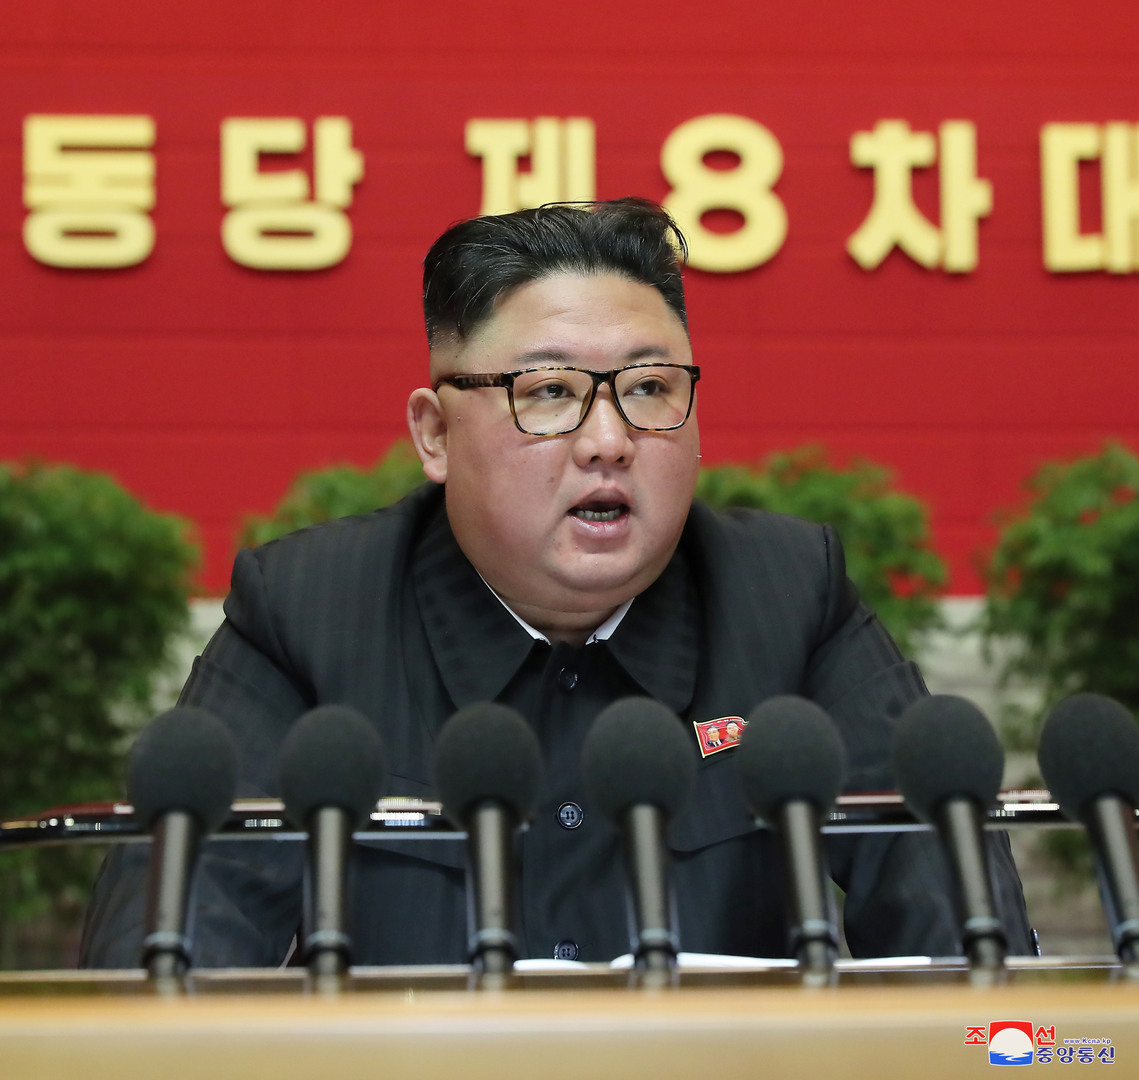 الأمم المتحدة ترفض تصريحات كيم جونغ أون حول السلاح النووي